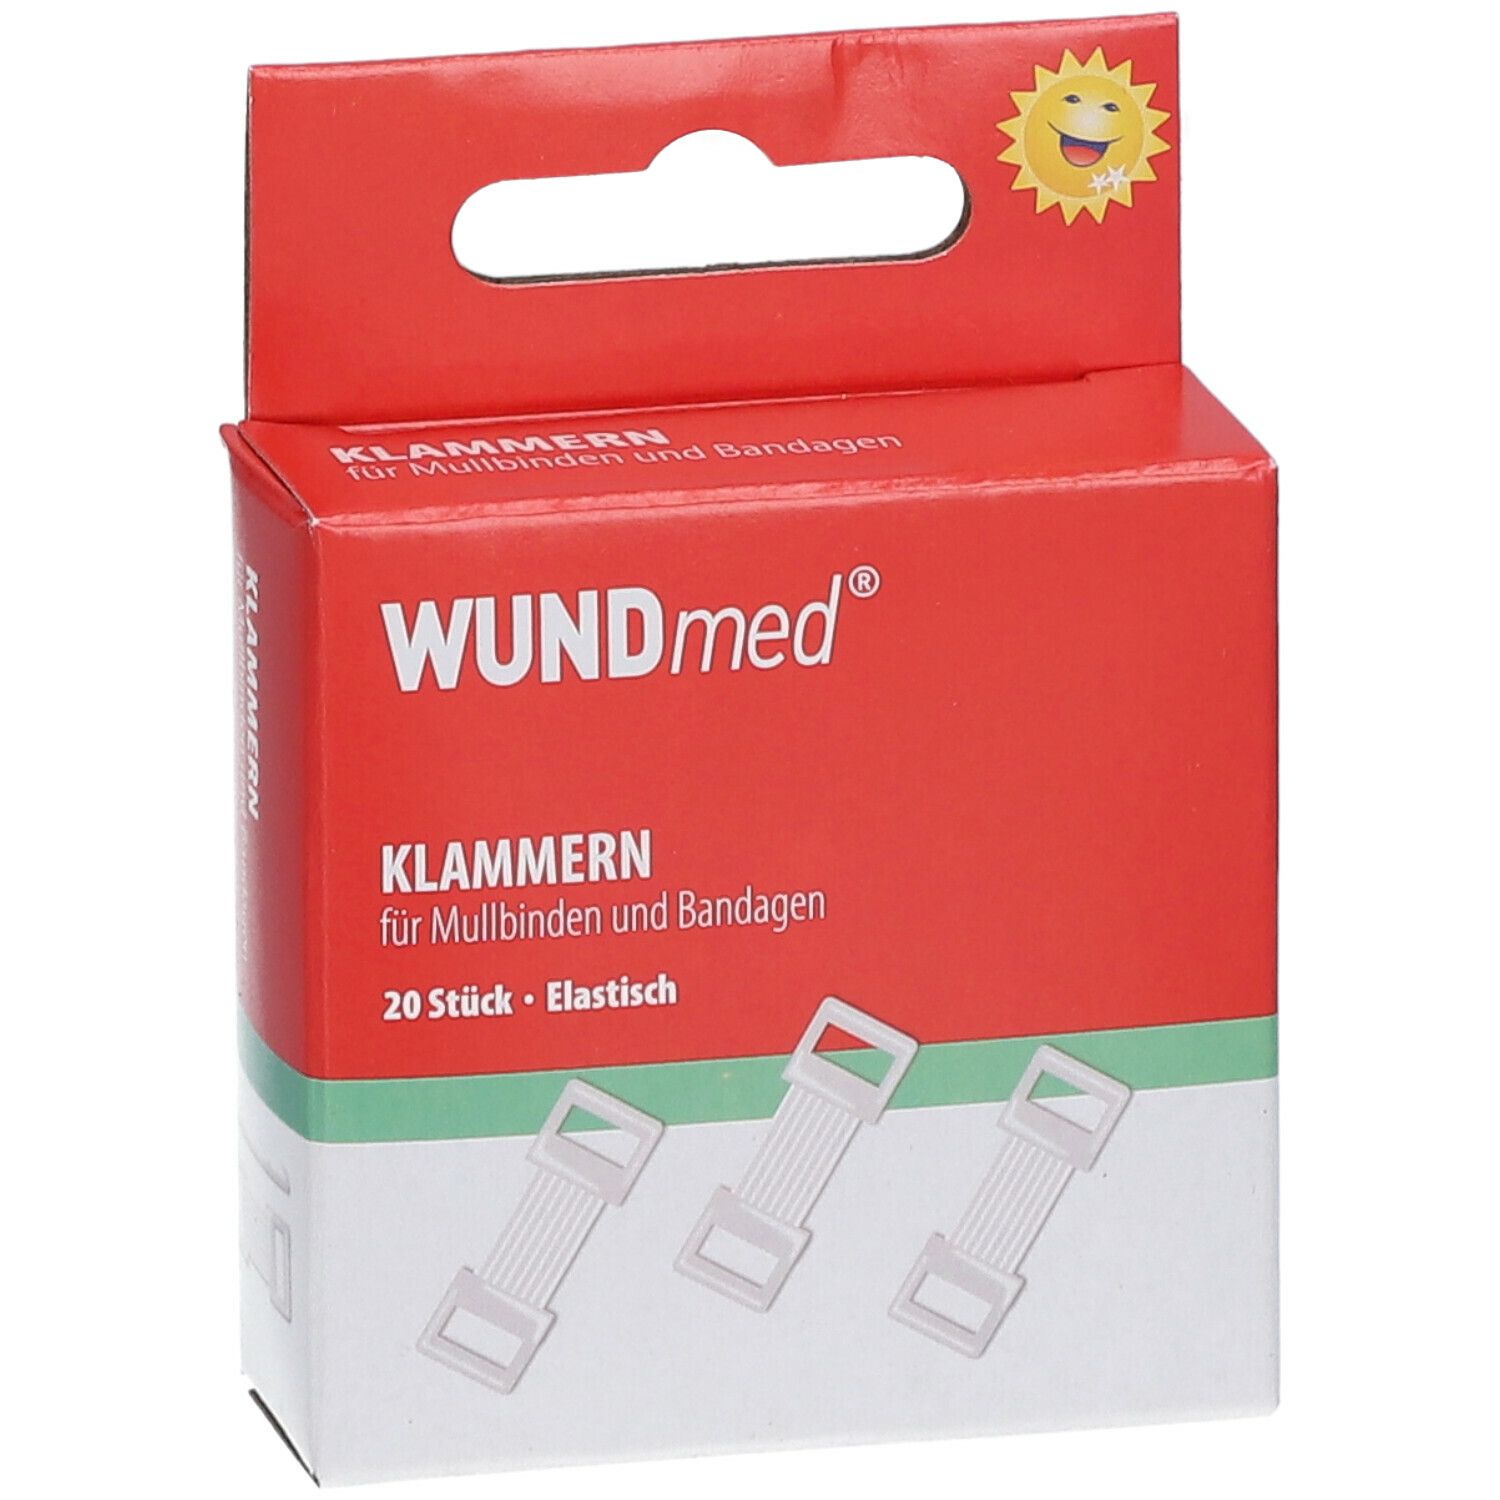 WUNDmed® Klammern für Mullbinden und Bandagen